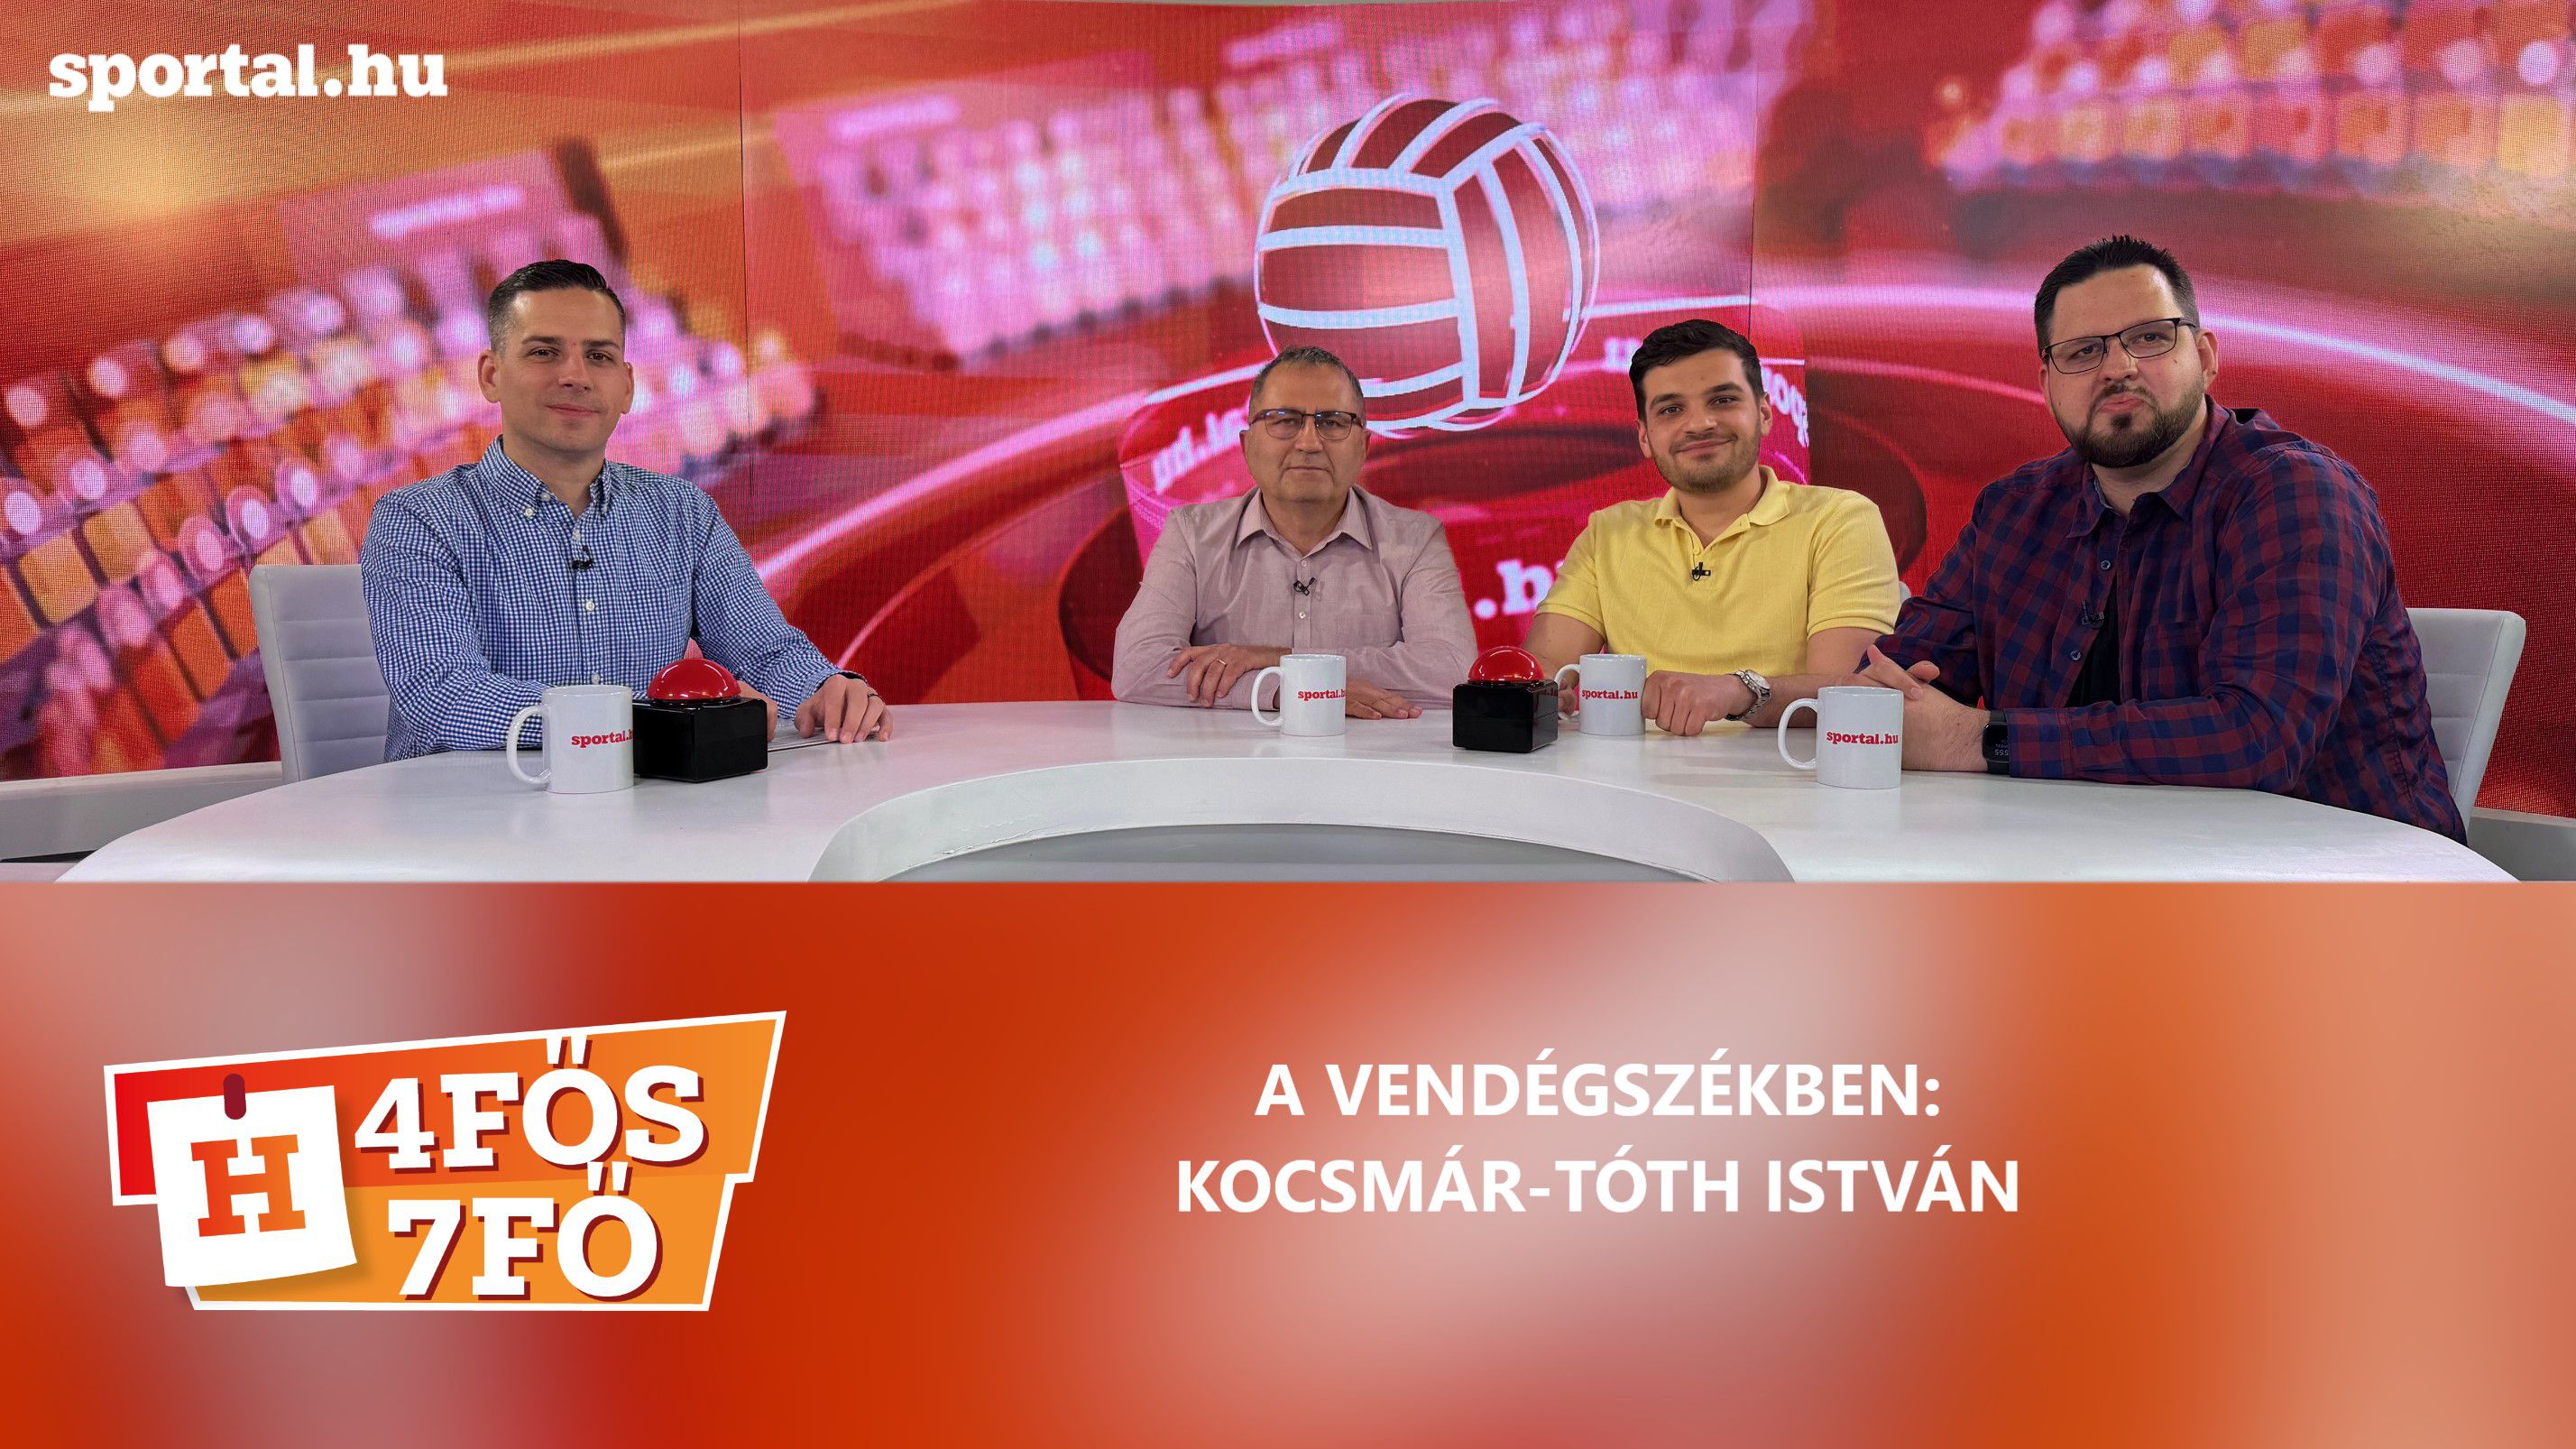 A Sportal Tv stúdiójában: Cselleng Ádám, Szekeres Tamás, Cseh Benjámin és Kocsmár-Tóth István